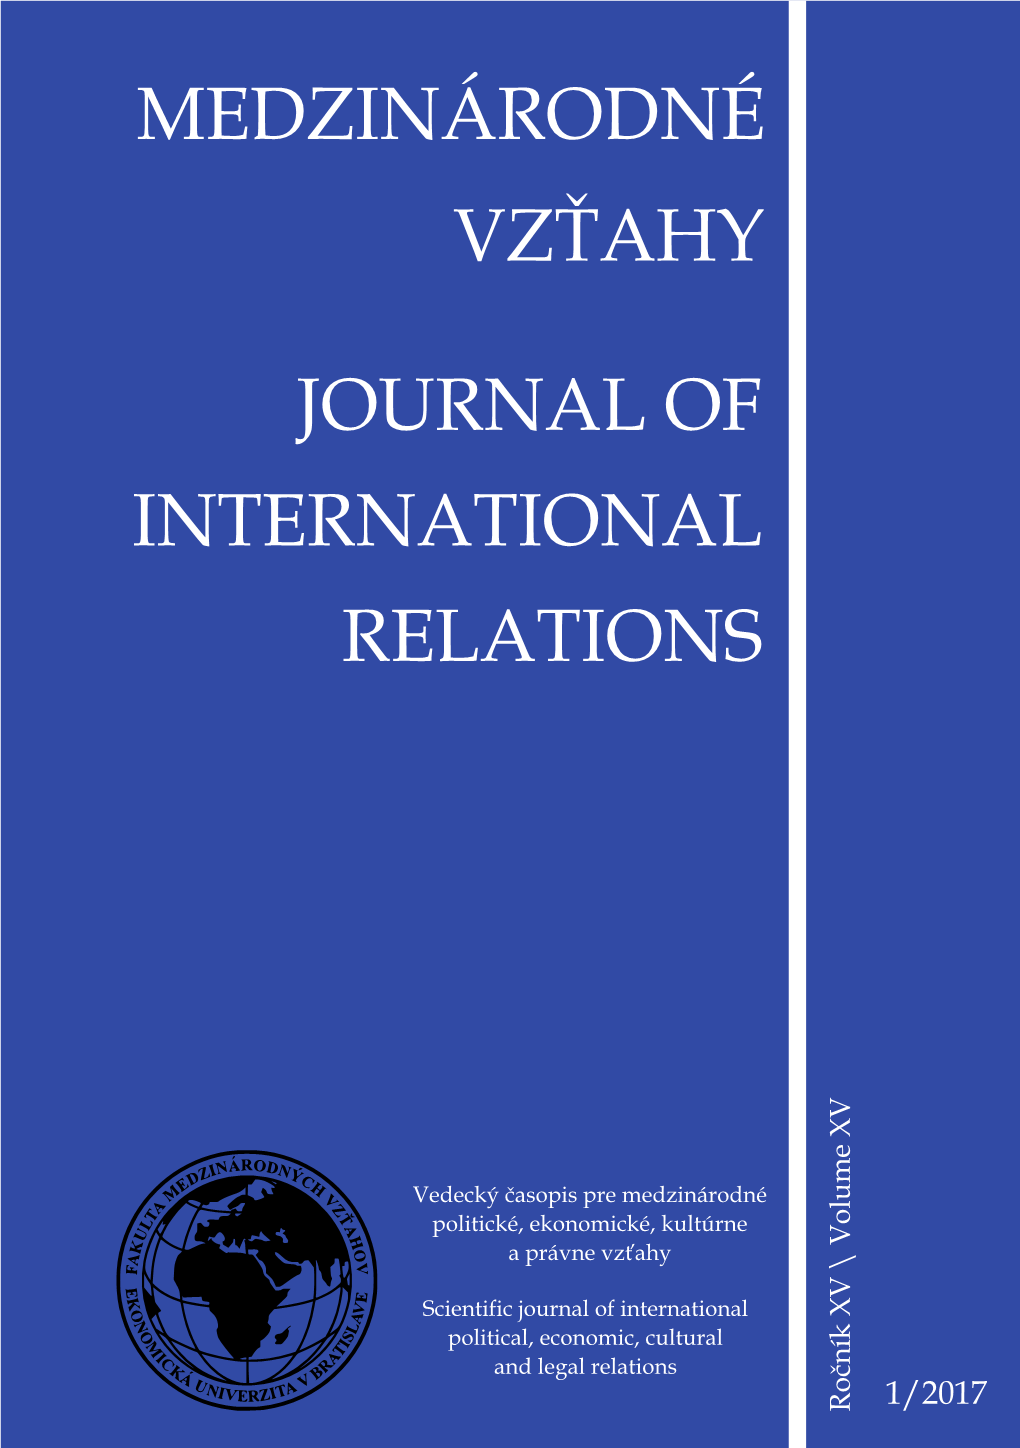 Medzinárodné Vzťahy Journal of International Relations